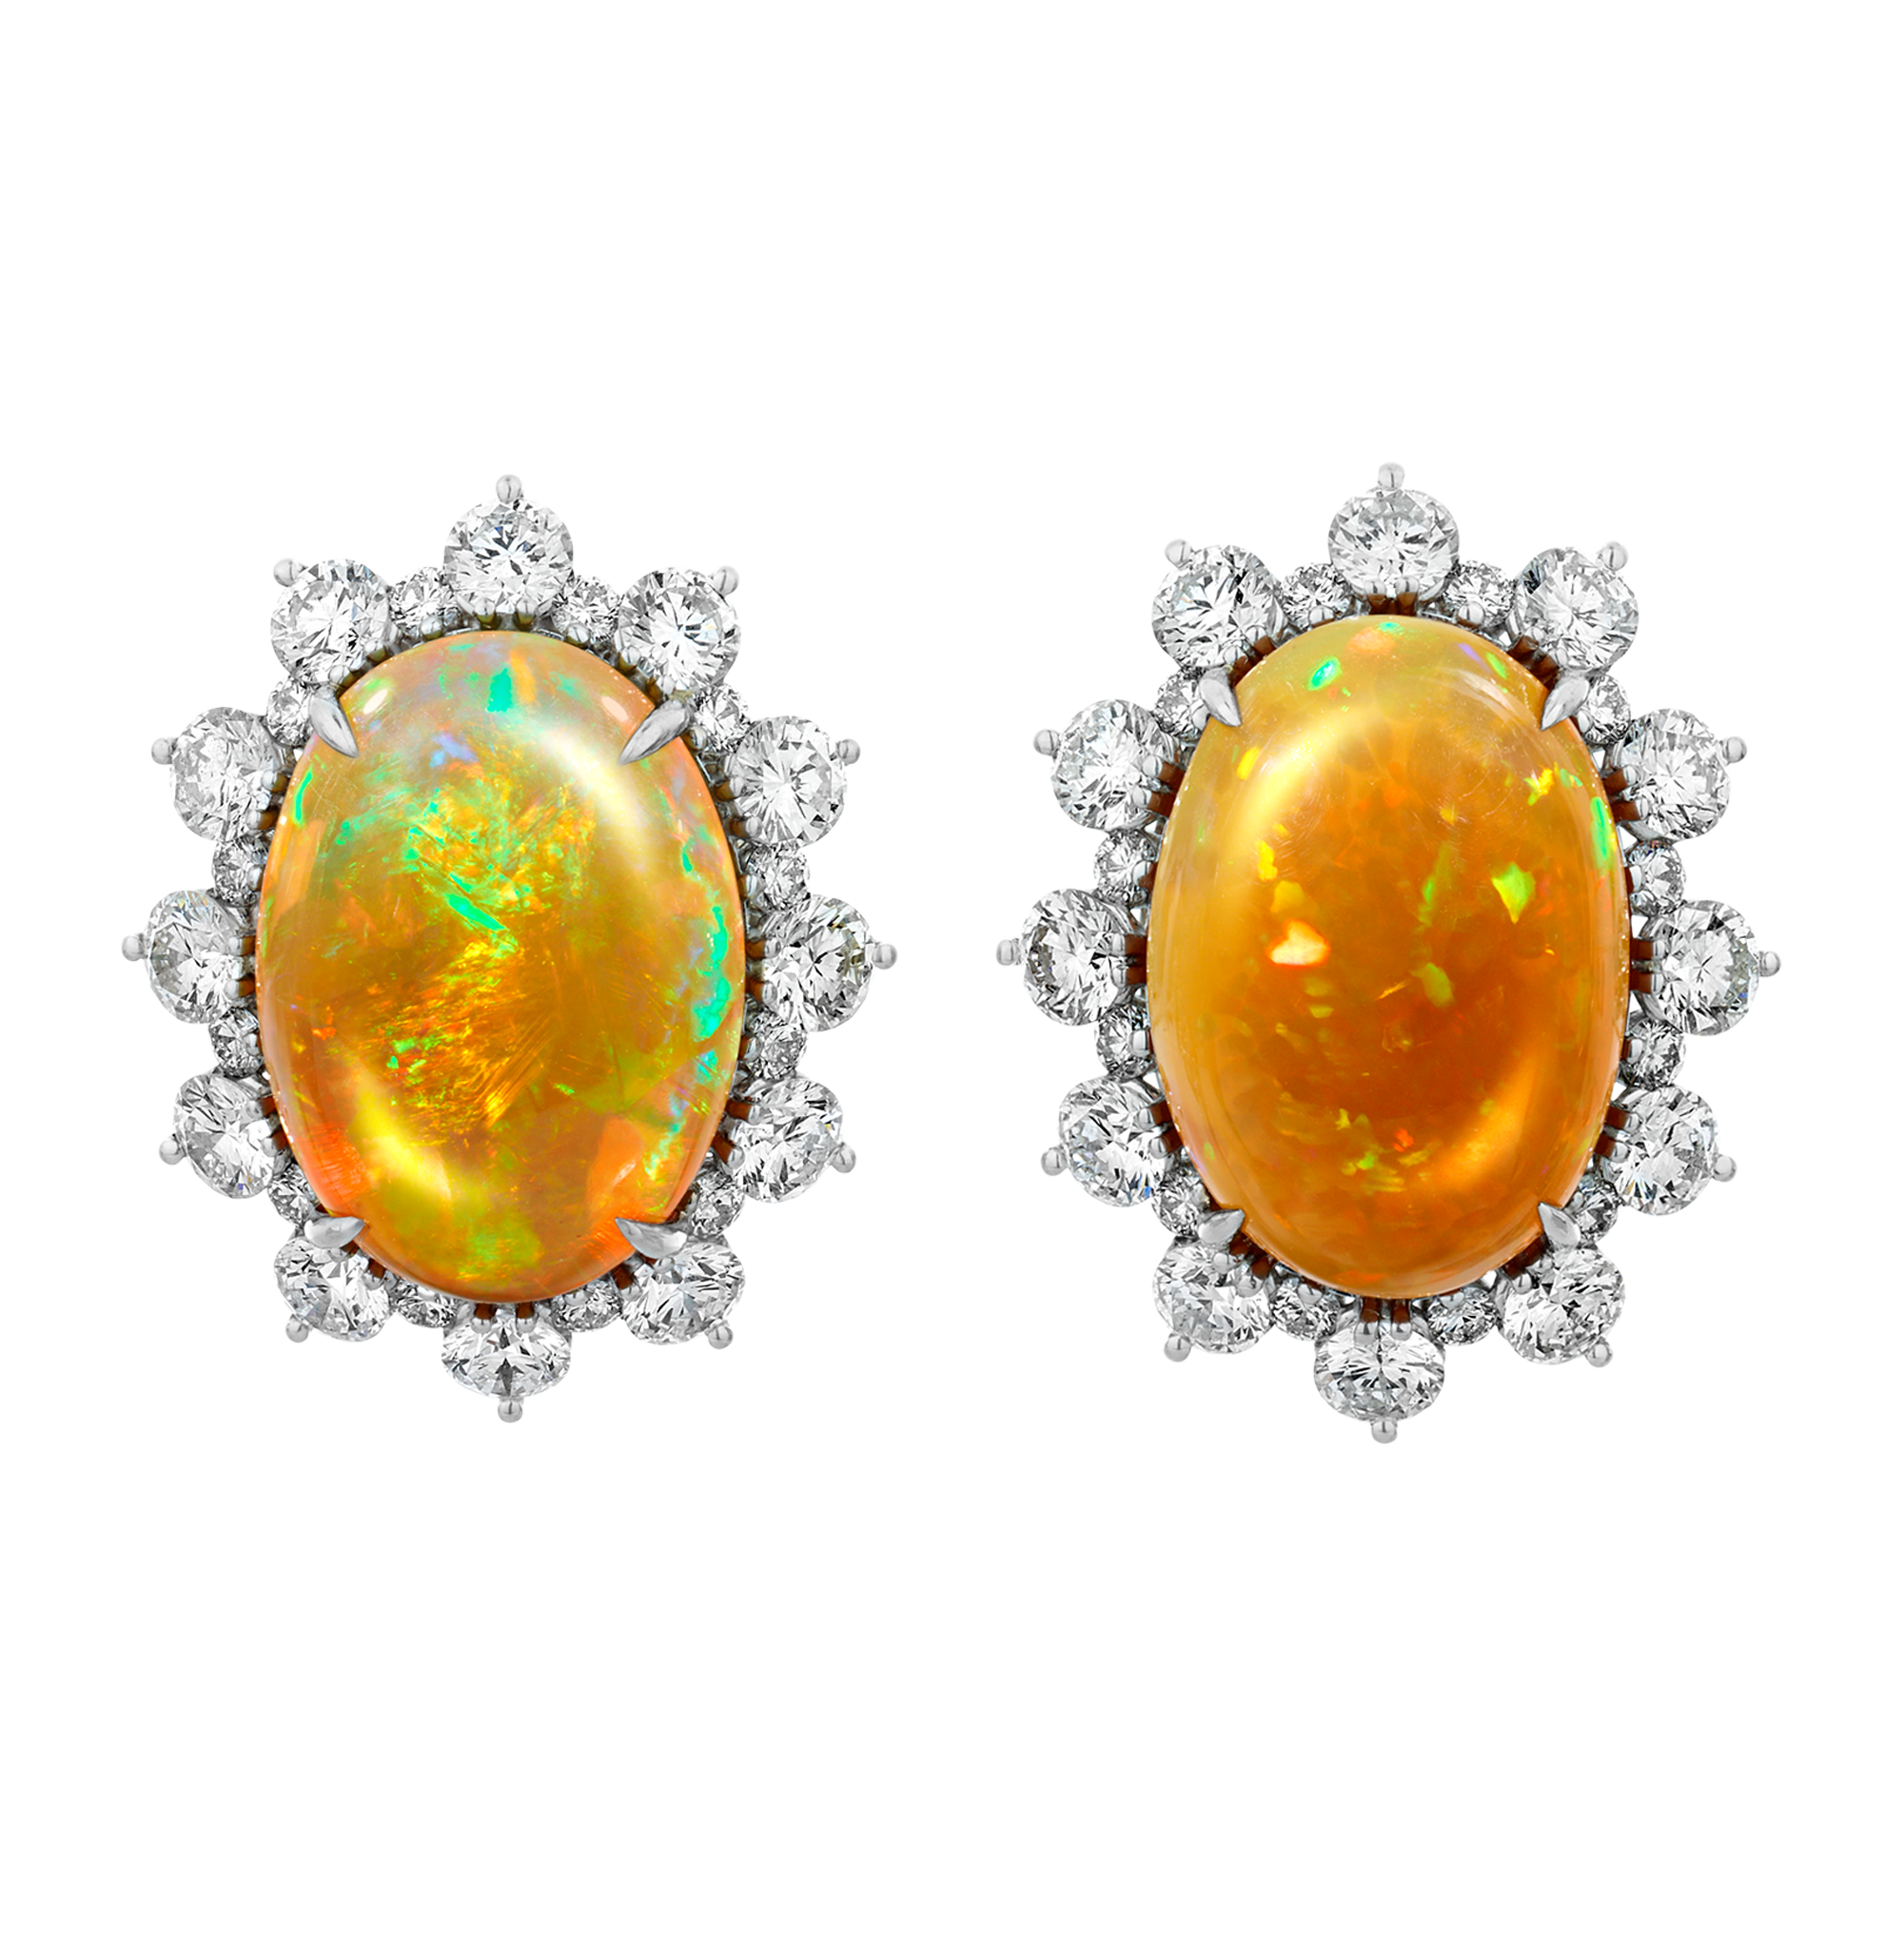 Fire Opal Earrings, 13.40 Carats